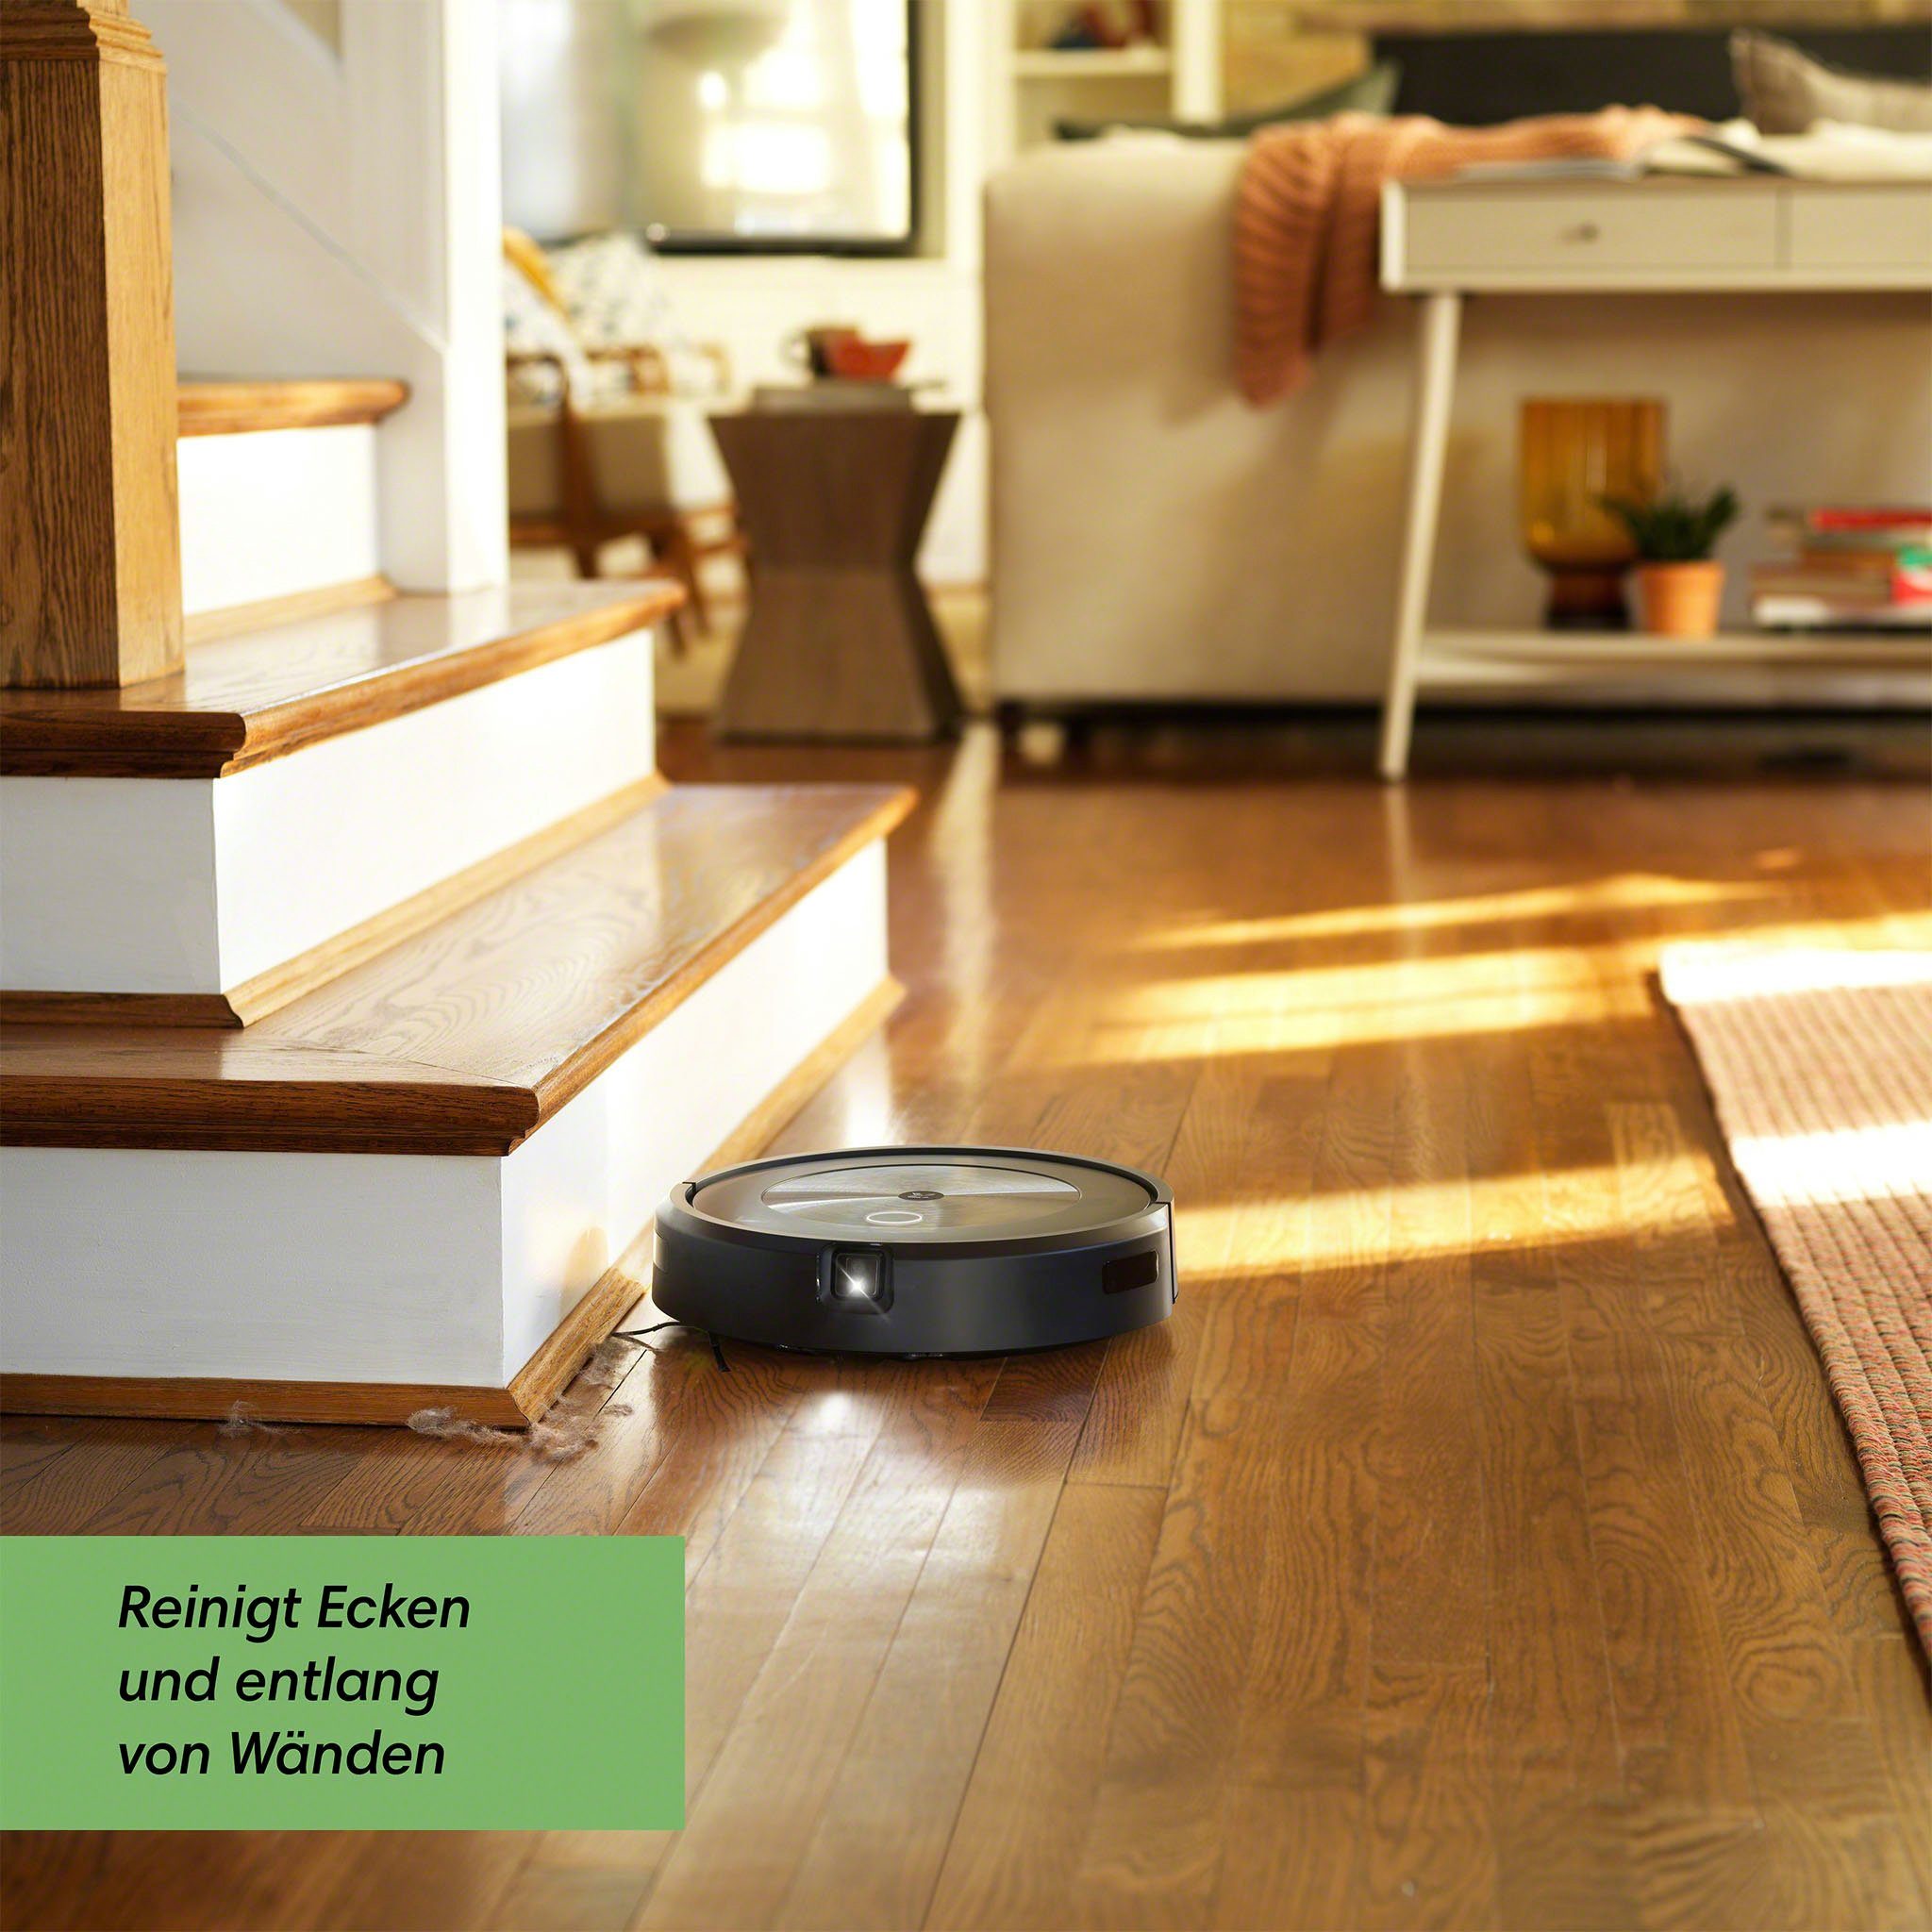 iRobot Saugroboter Kartierung, beutellos, Objekterkennung Roomba® j7 WLAN-fähig, (j7158)